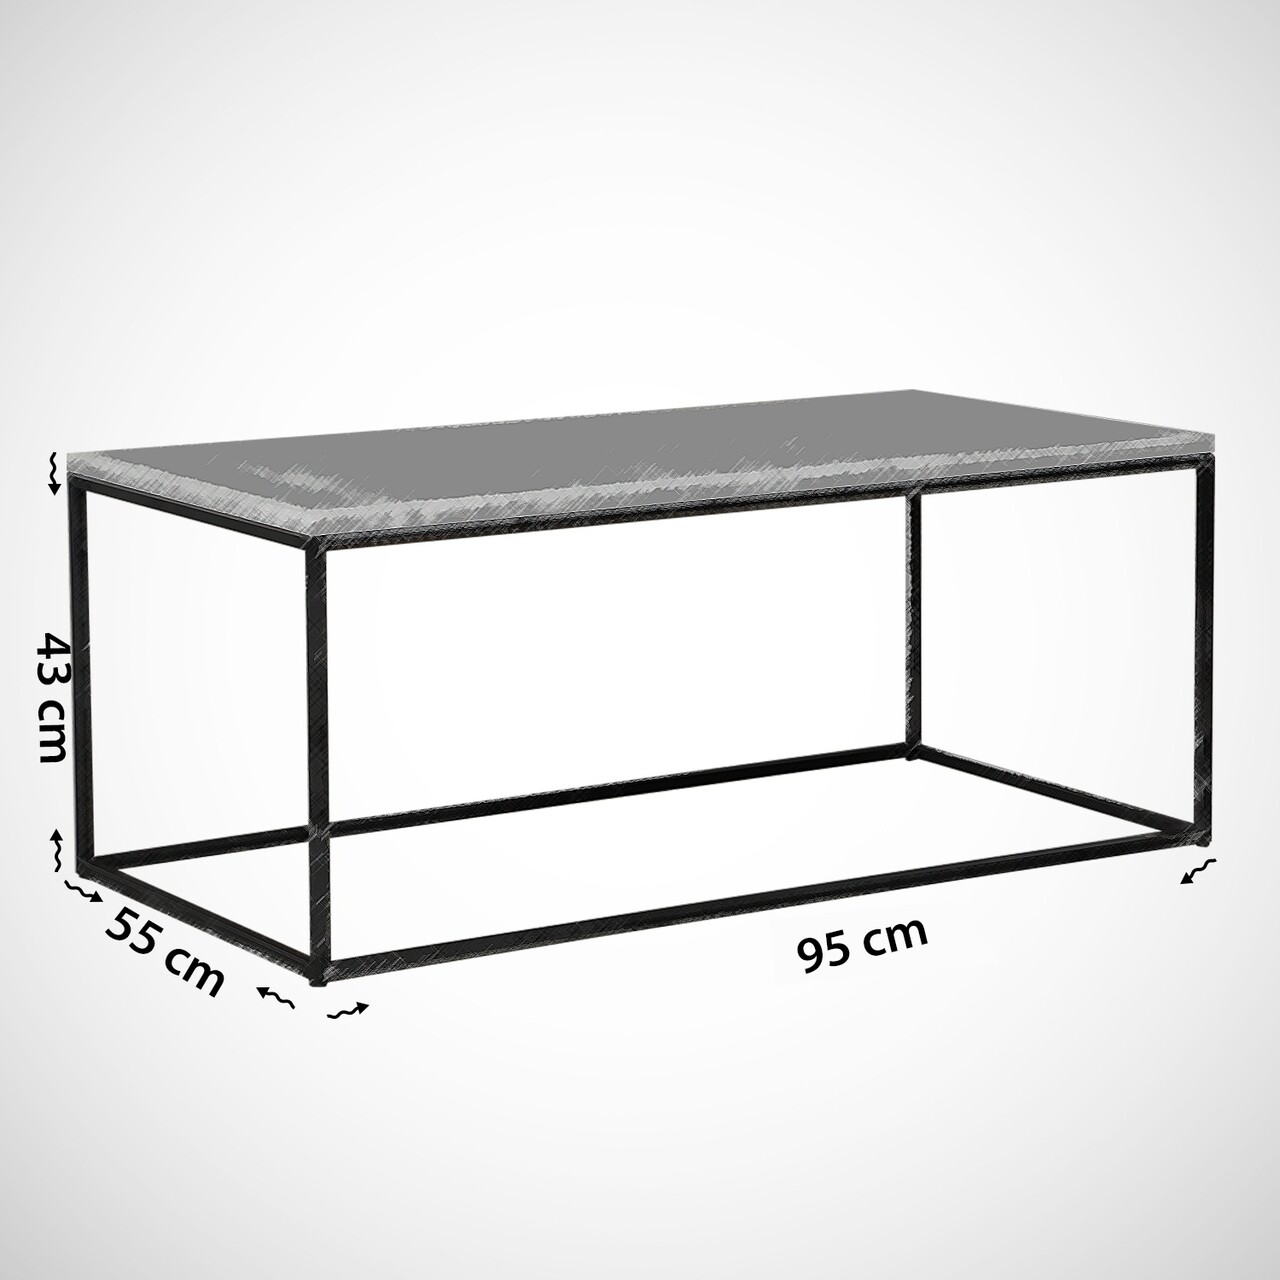 Cosco White Kávázóasztal, Comforty, 95x55x43 Cm, Fehér